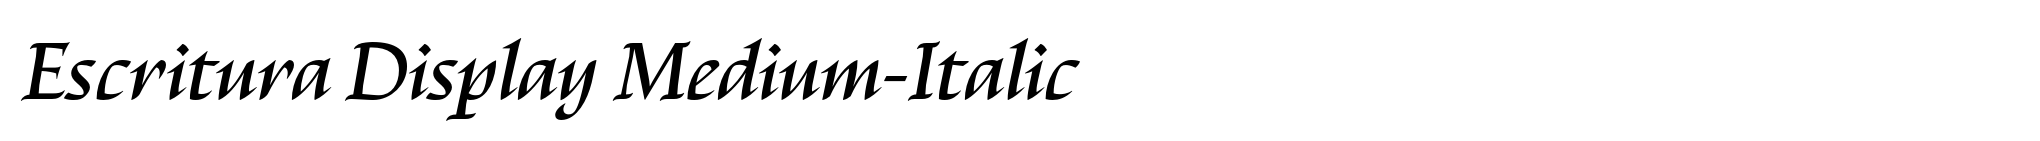 Escritura Display Medium-Italic image